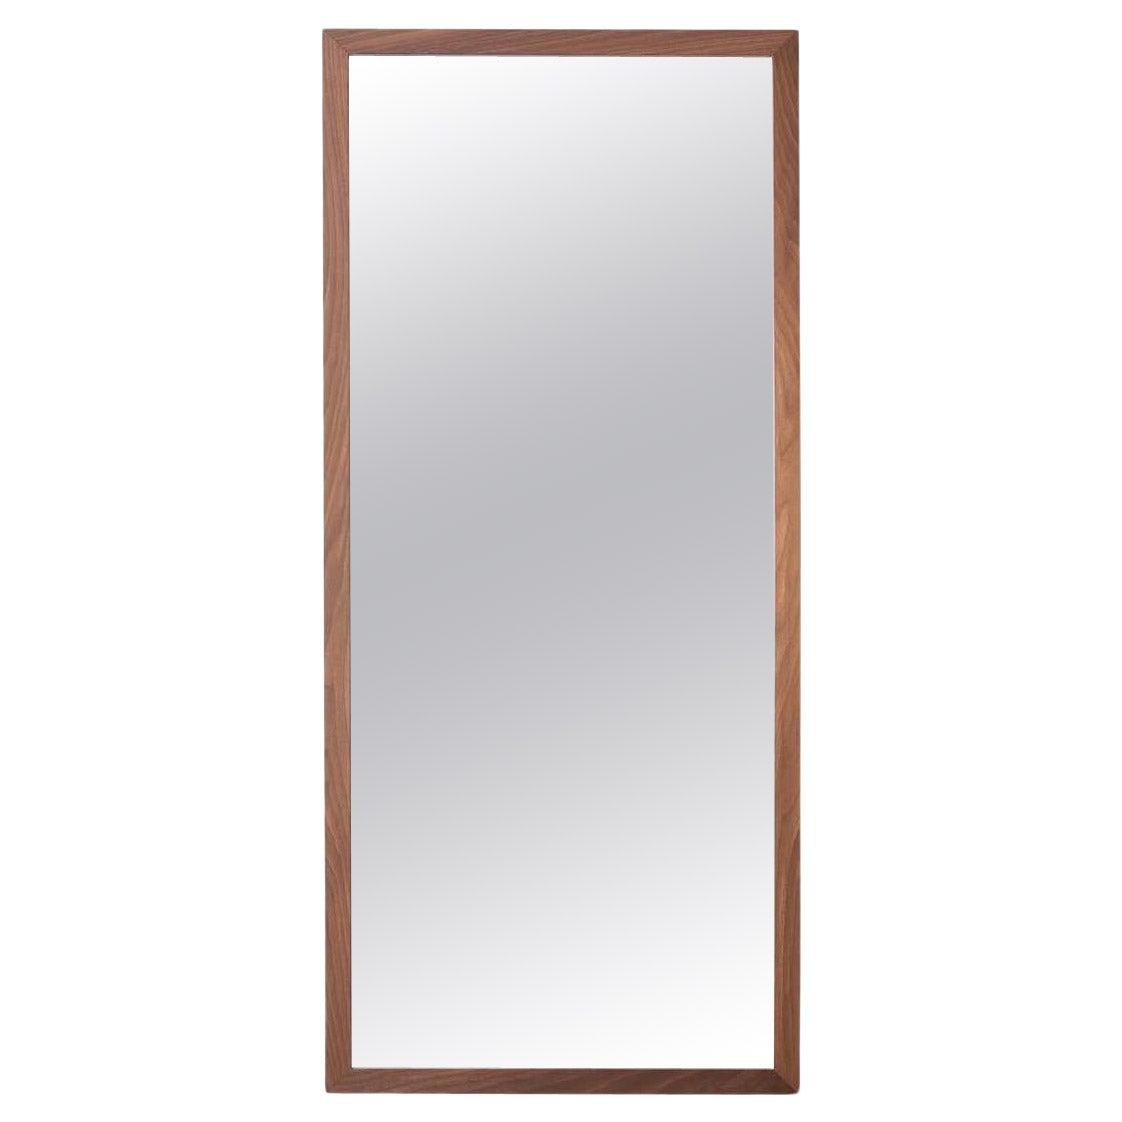 Specchio Rettangolare 2018, Rectangular Mirror